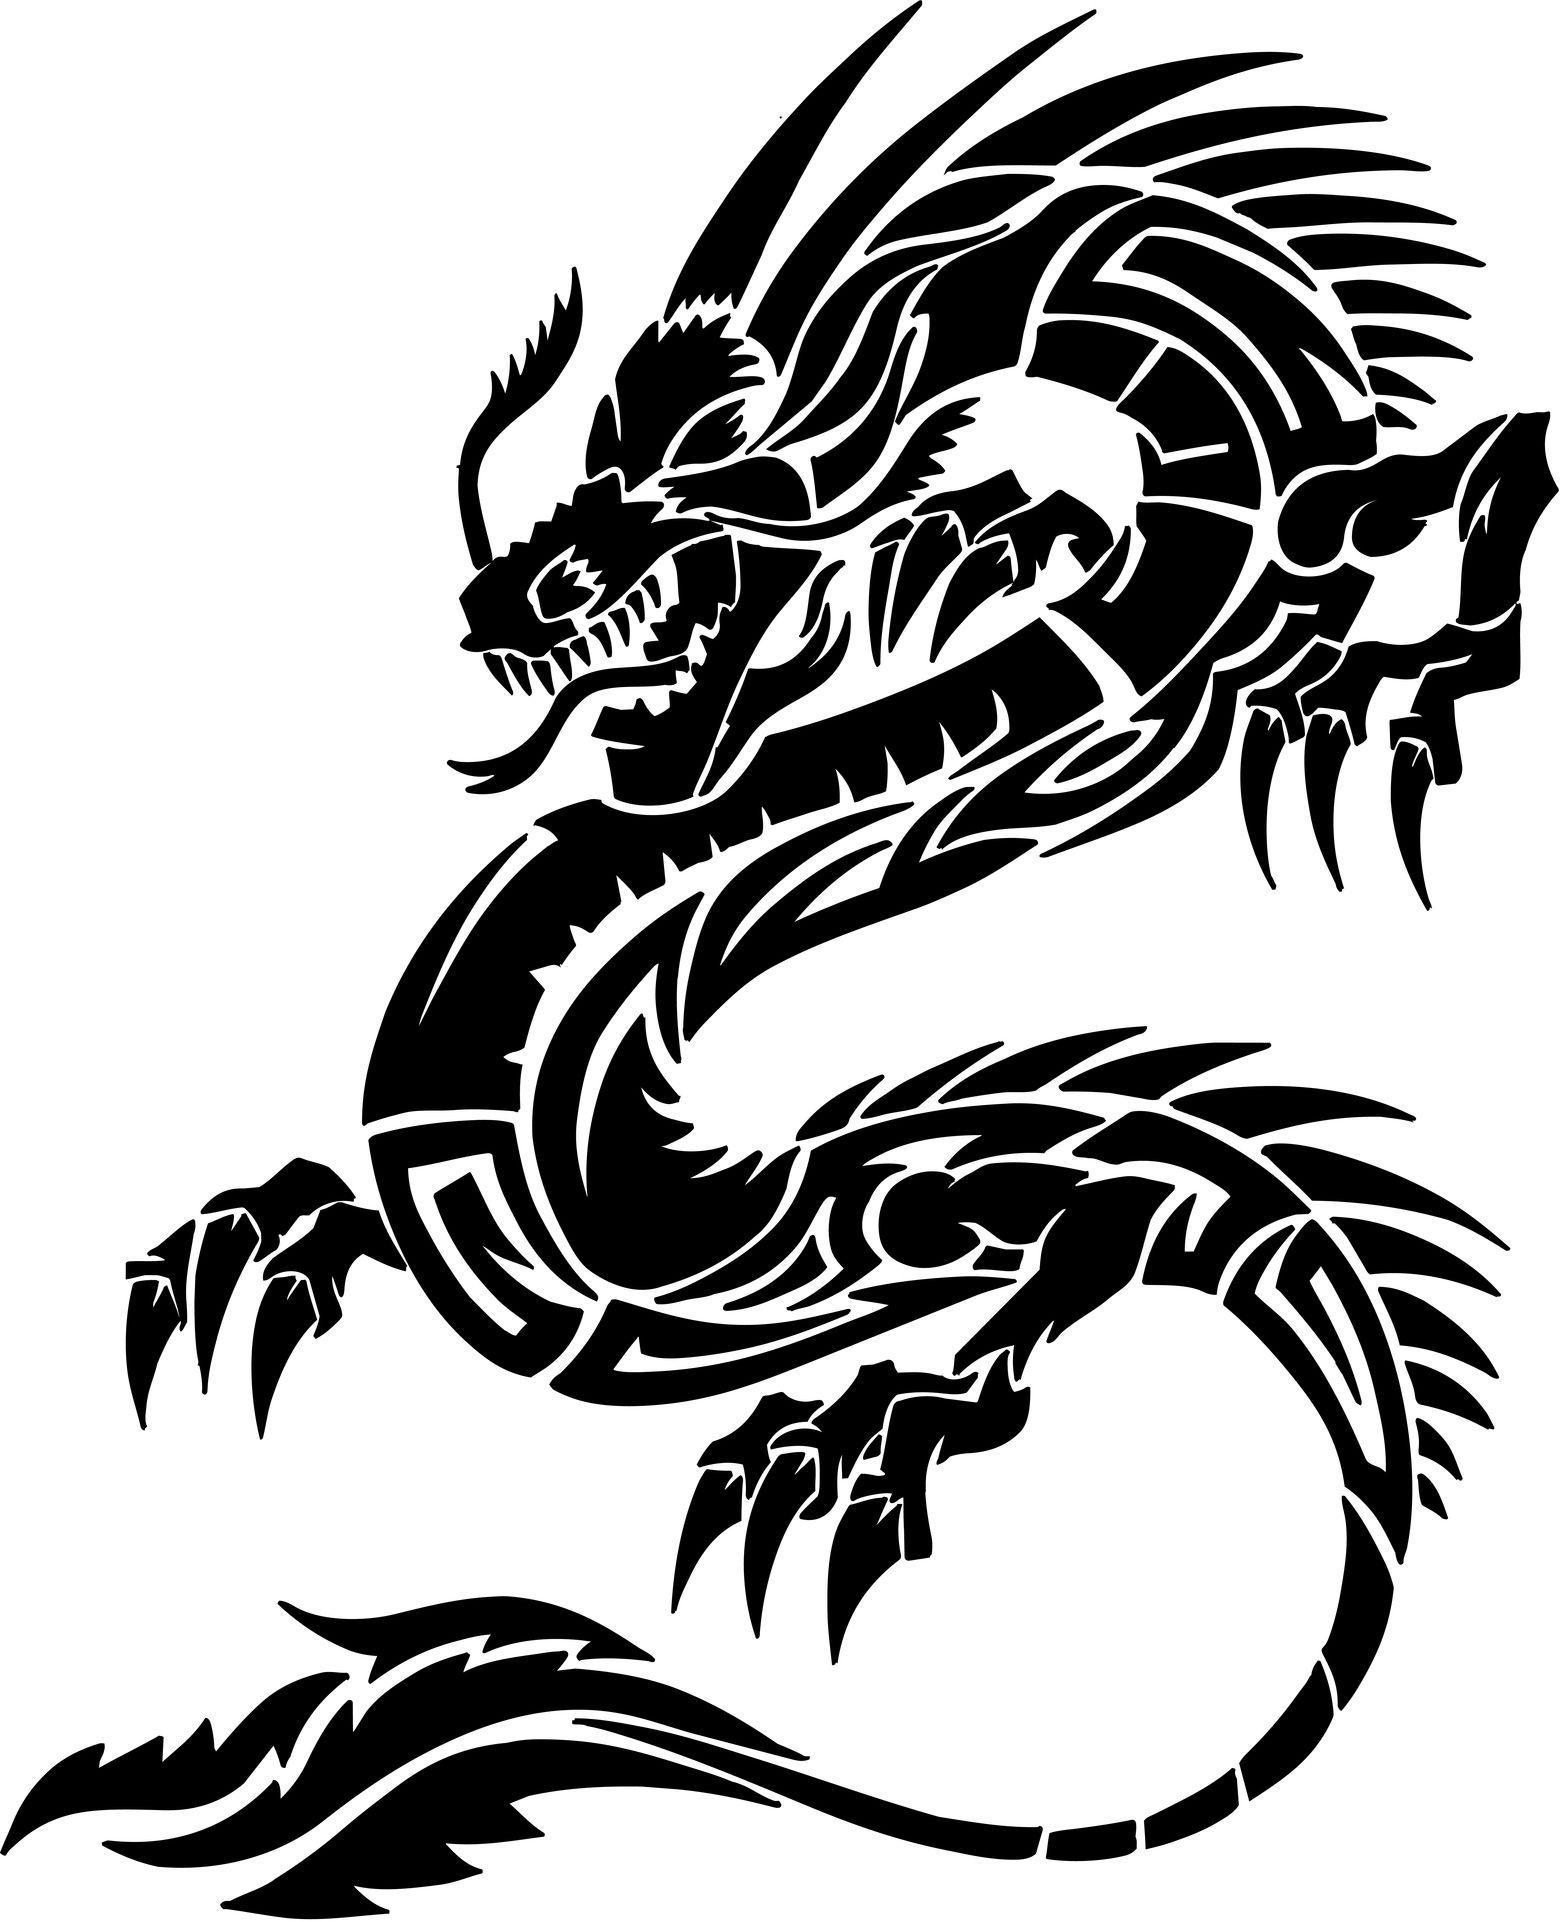 1560x1922px 569.07 KB Dragon Tattoo